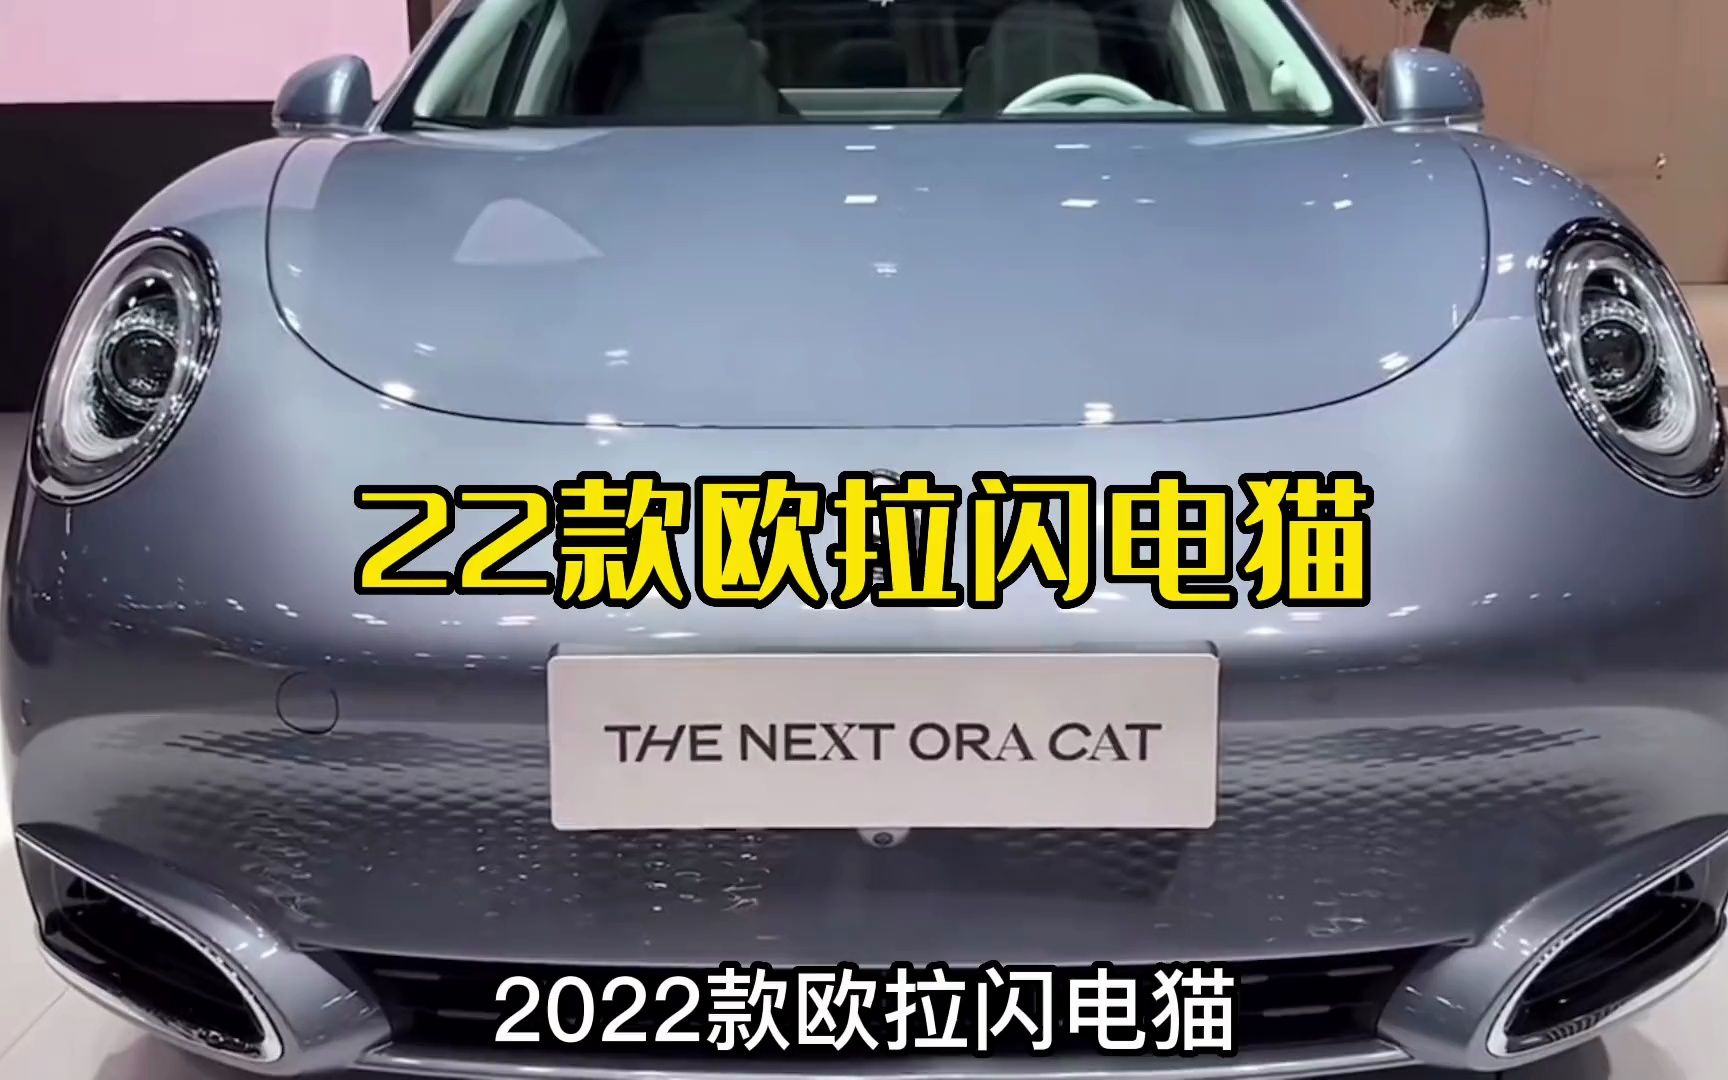 2022款欧拉闪电猫最新落地价参考与用车成本分析